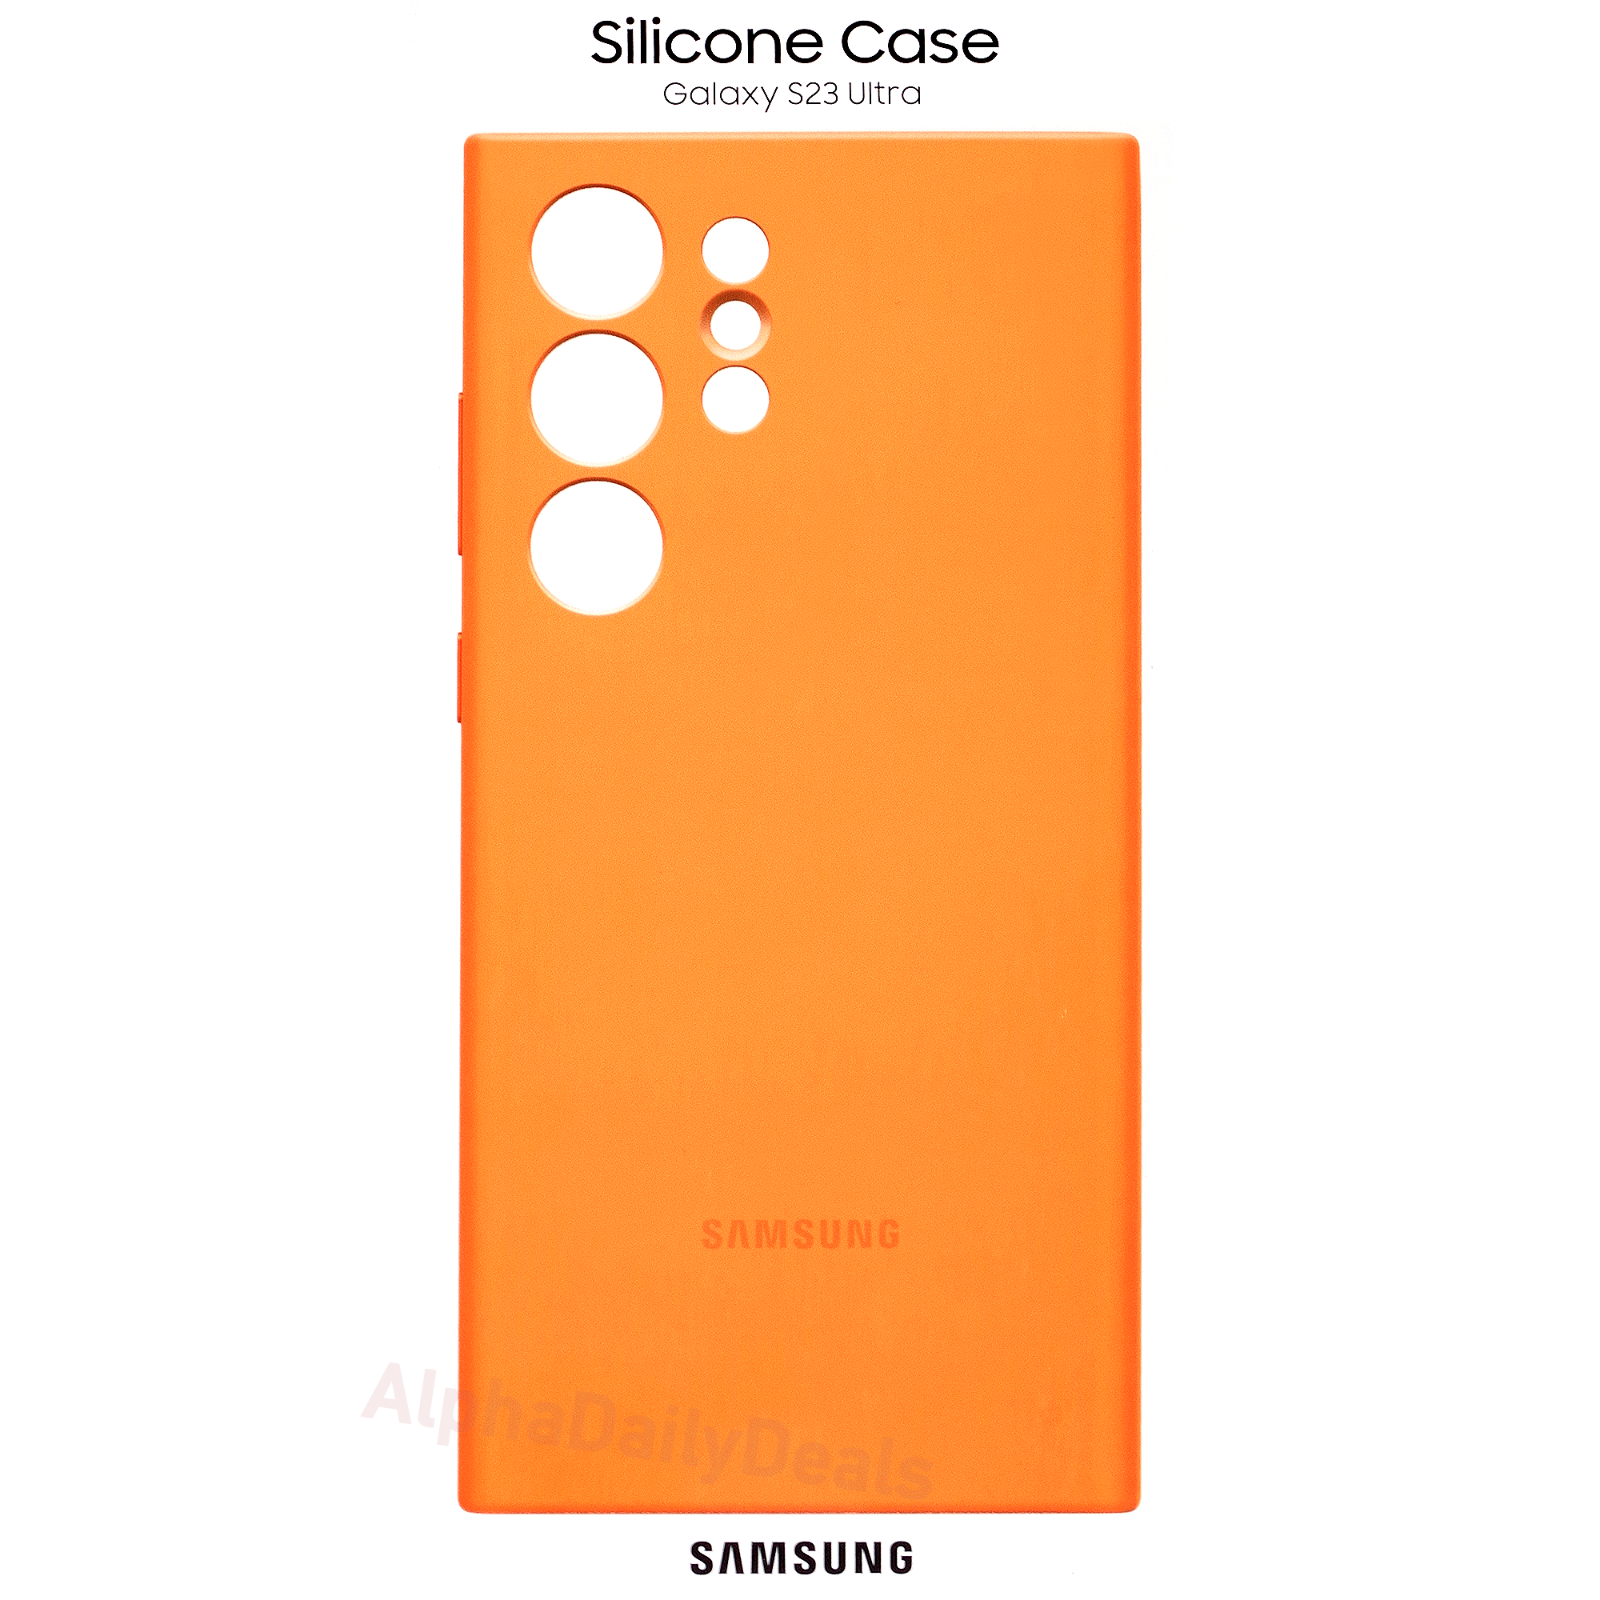 Genuine Samsung Silicone Case for Galaxy S23 Ultra - Orange